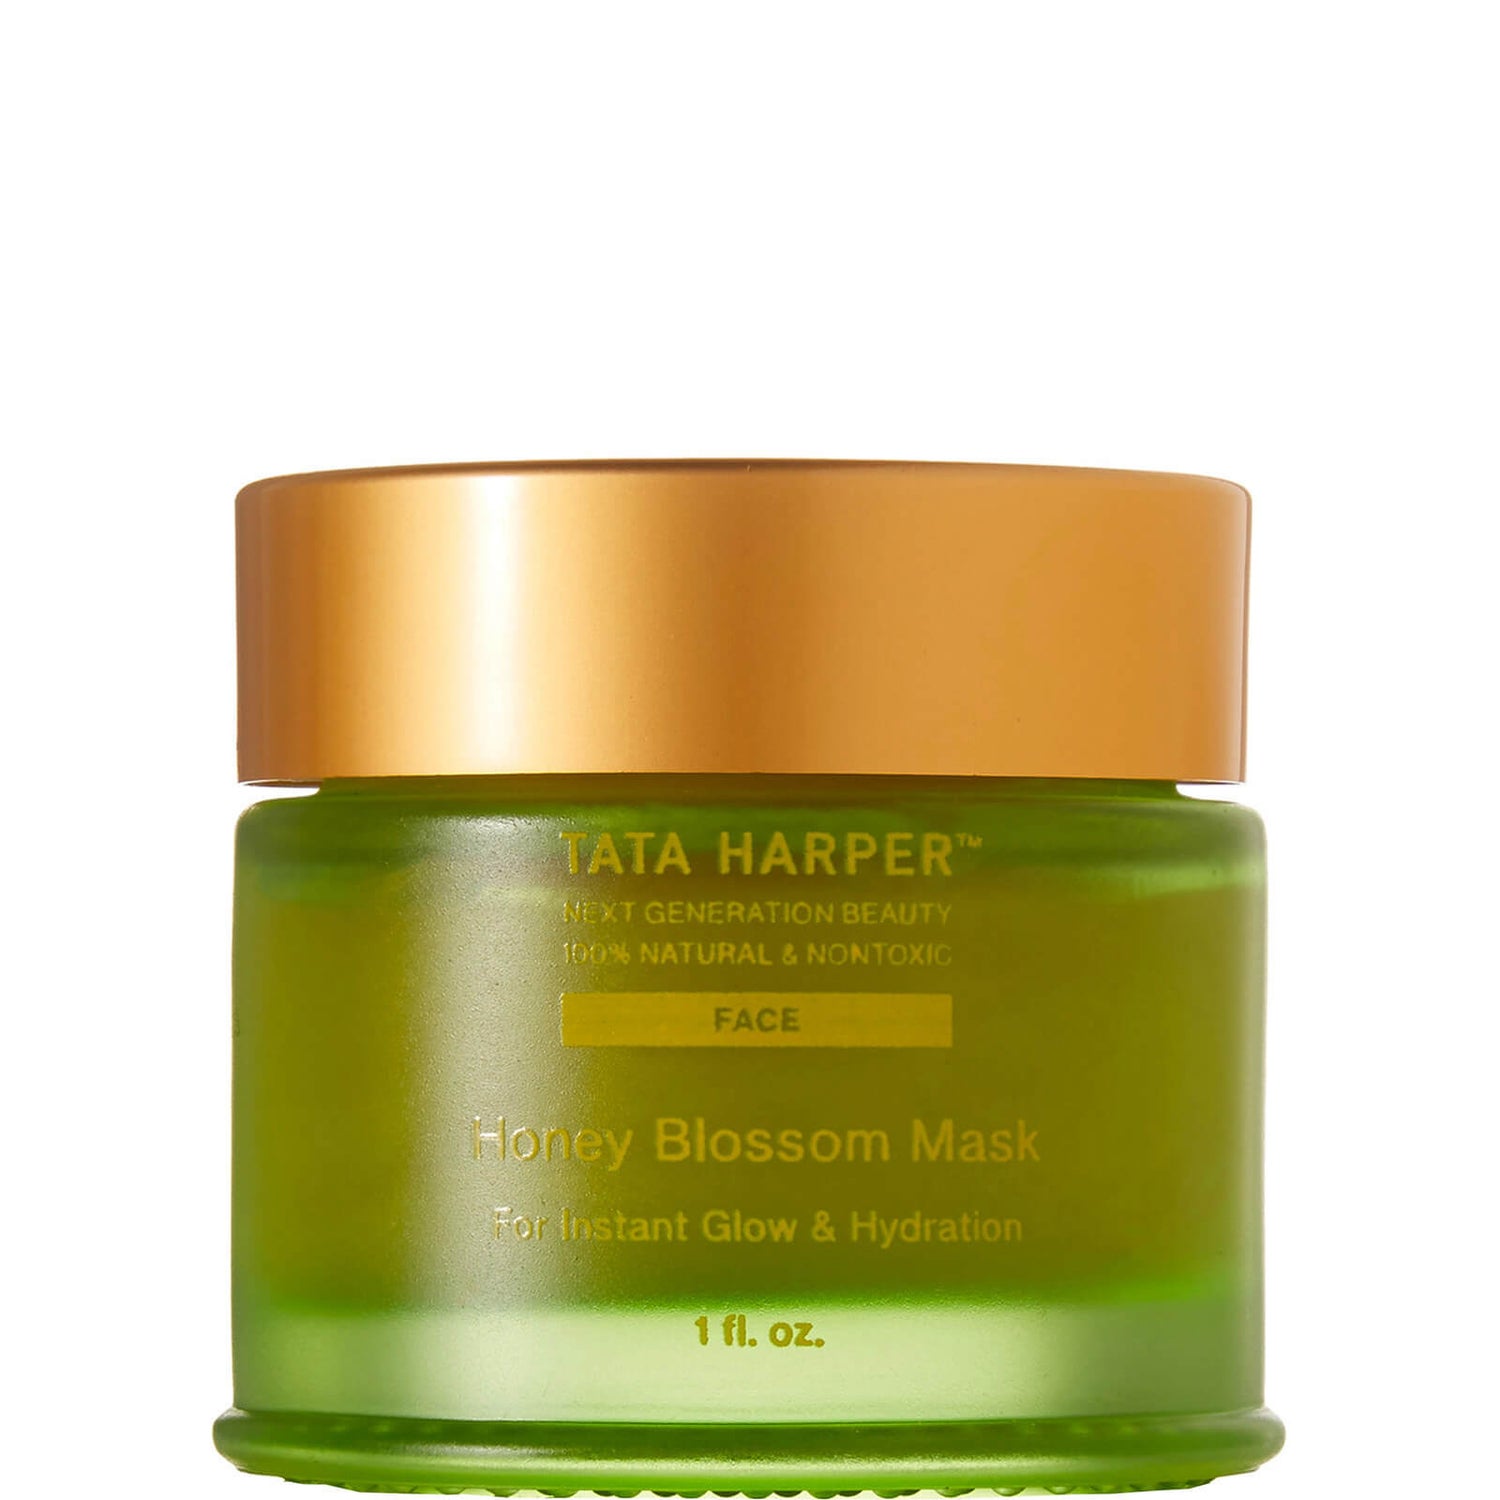 Tata Harper Honey Blossom Mask